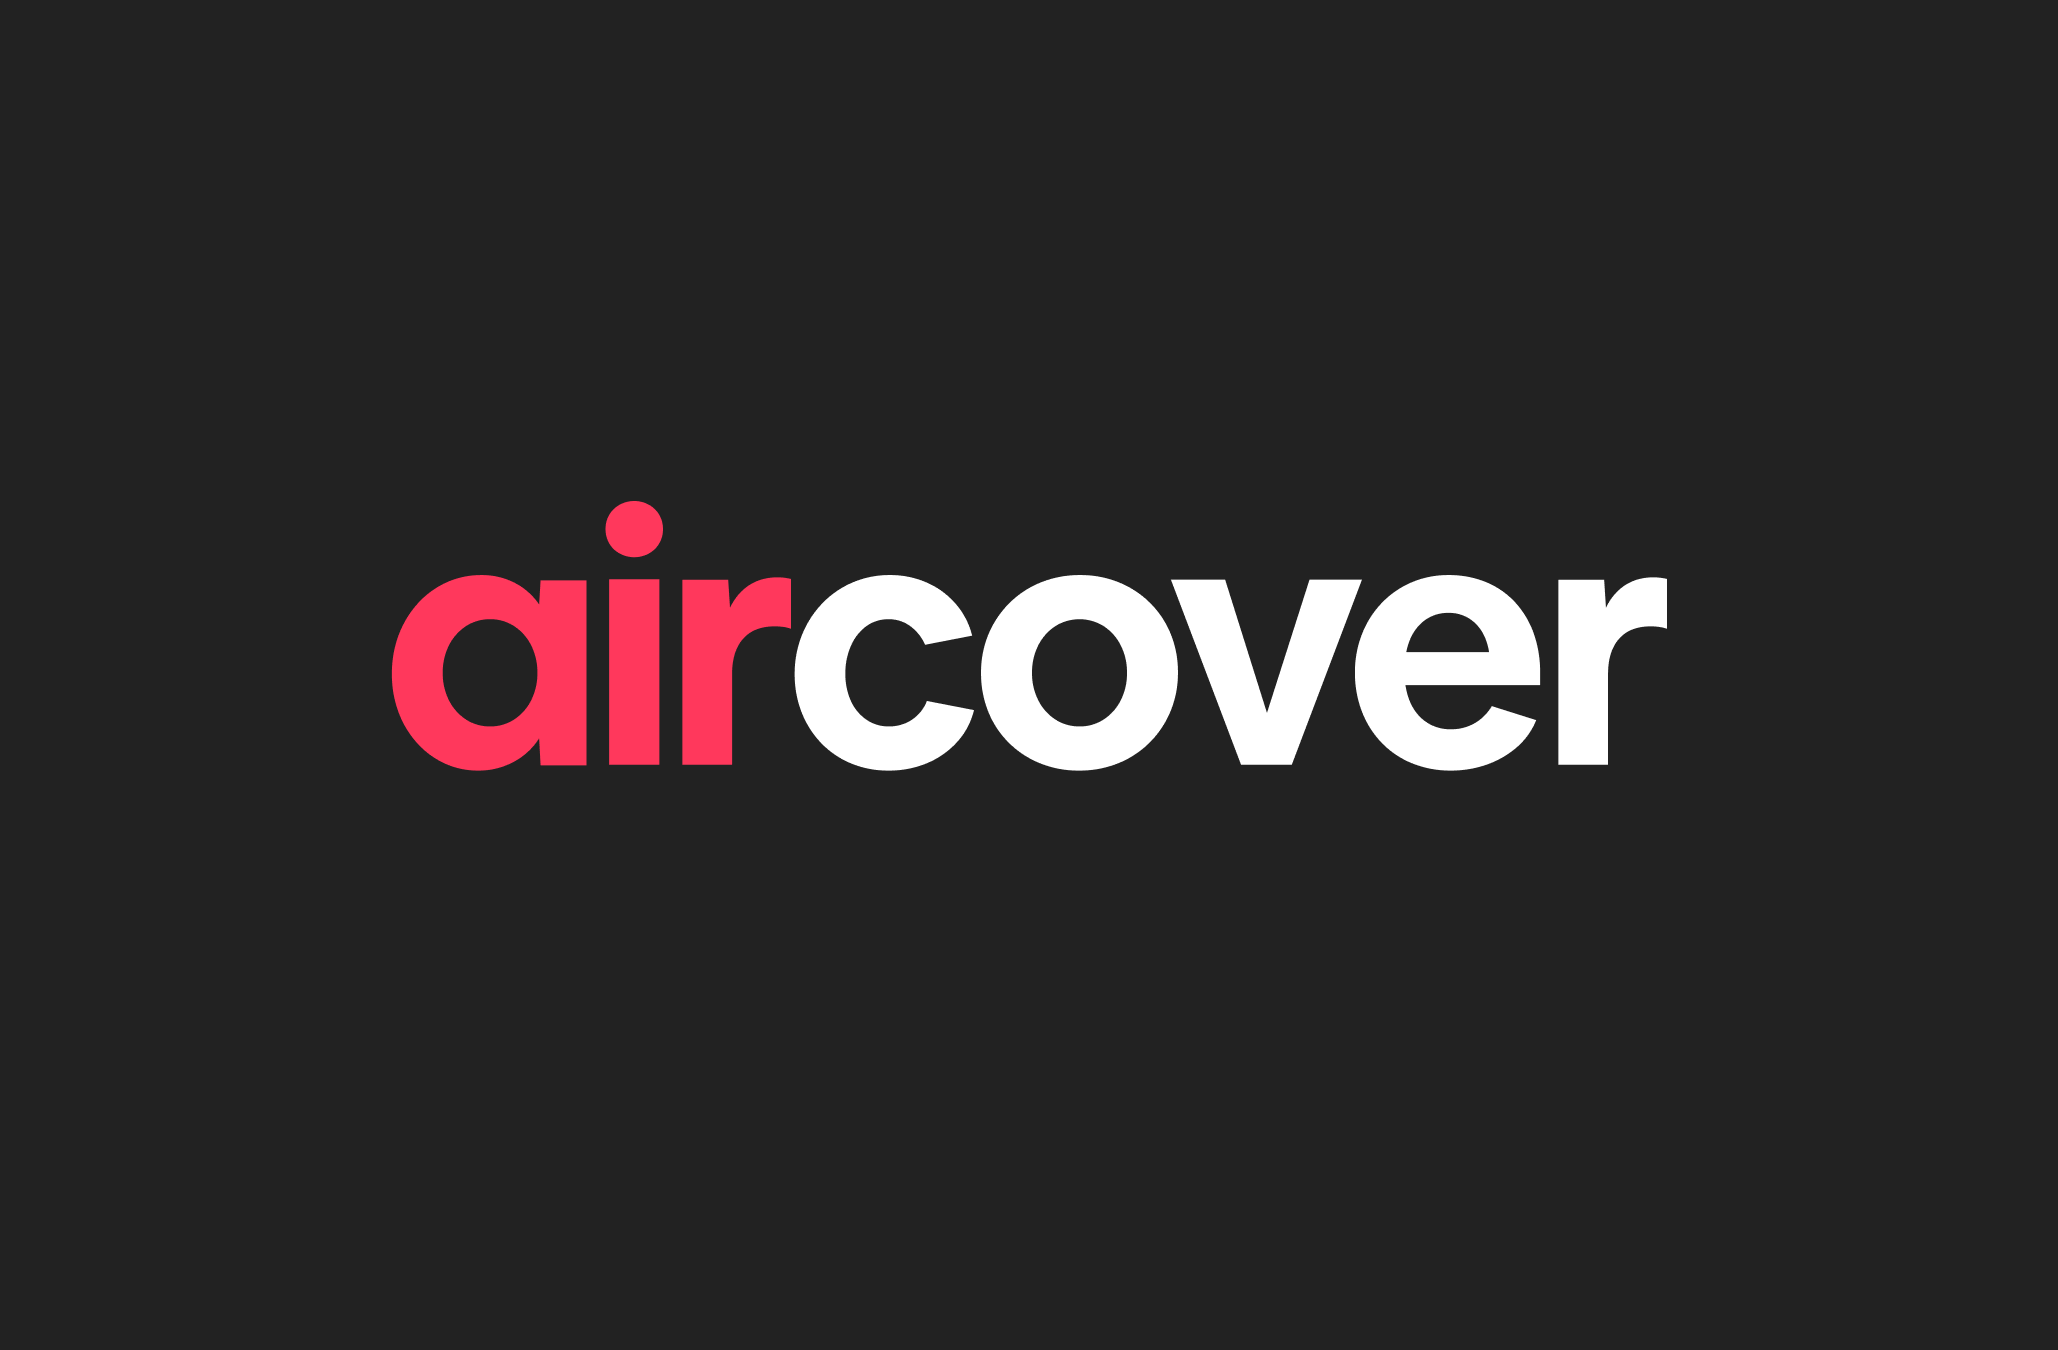 El logotipo de AirCover en letras rojas y blancas sobre un fondo negro.